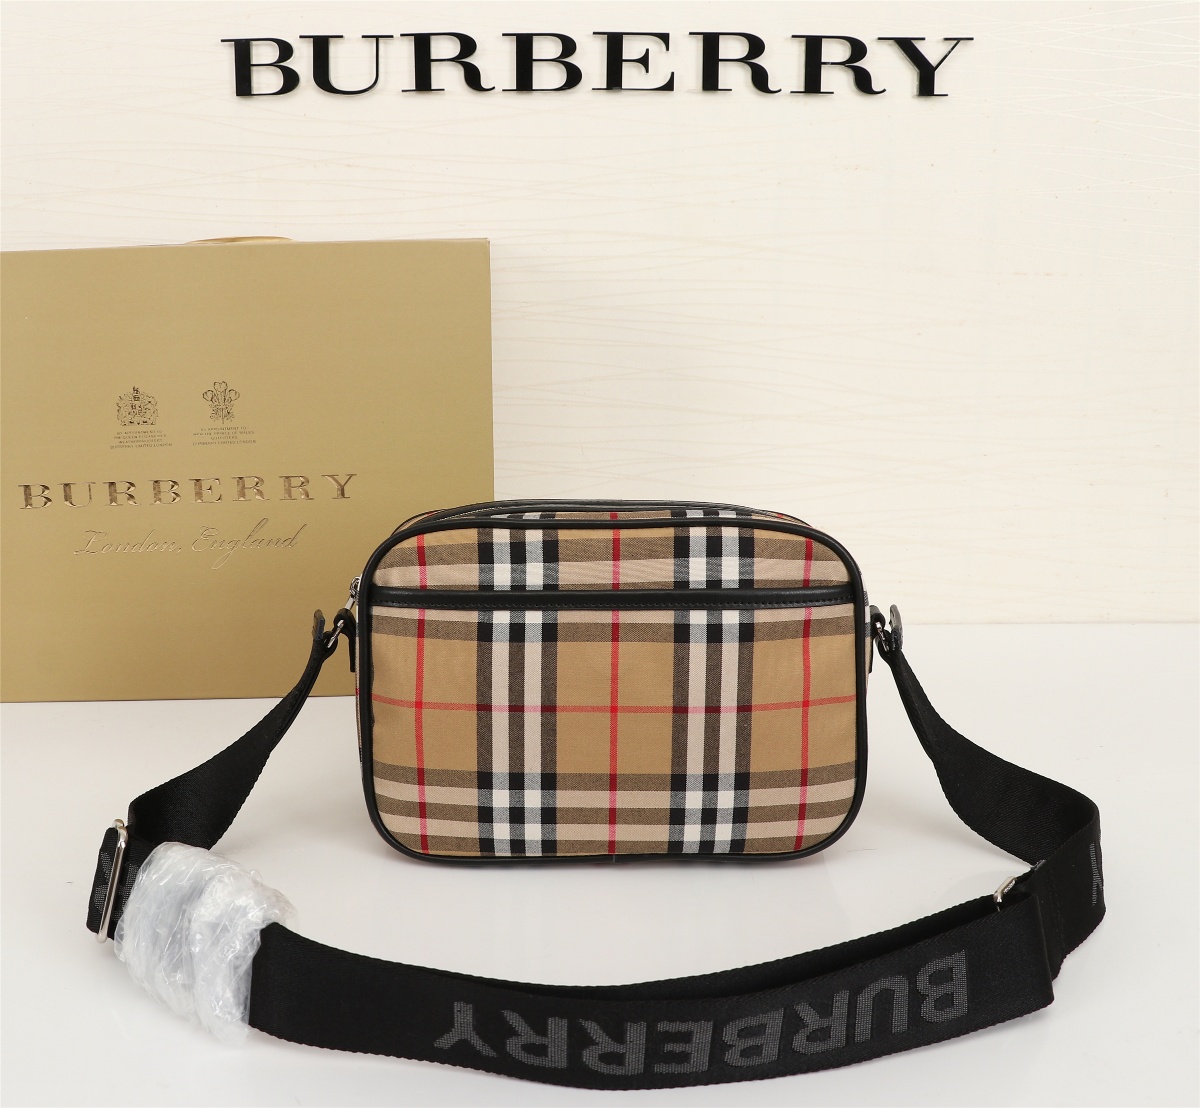 Burberry camera bag